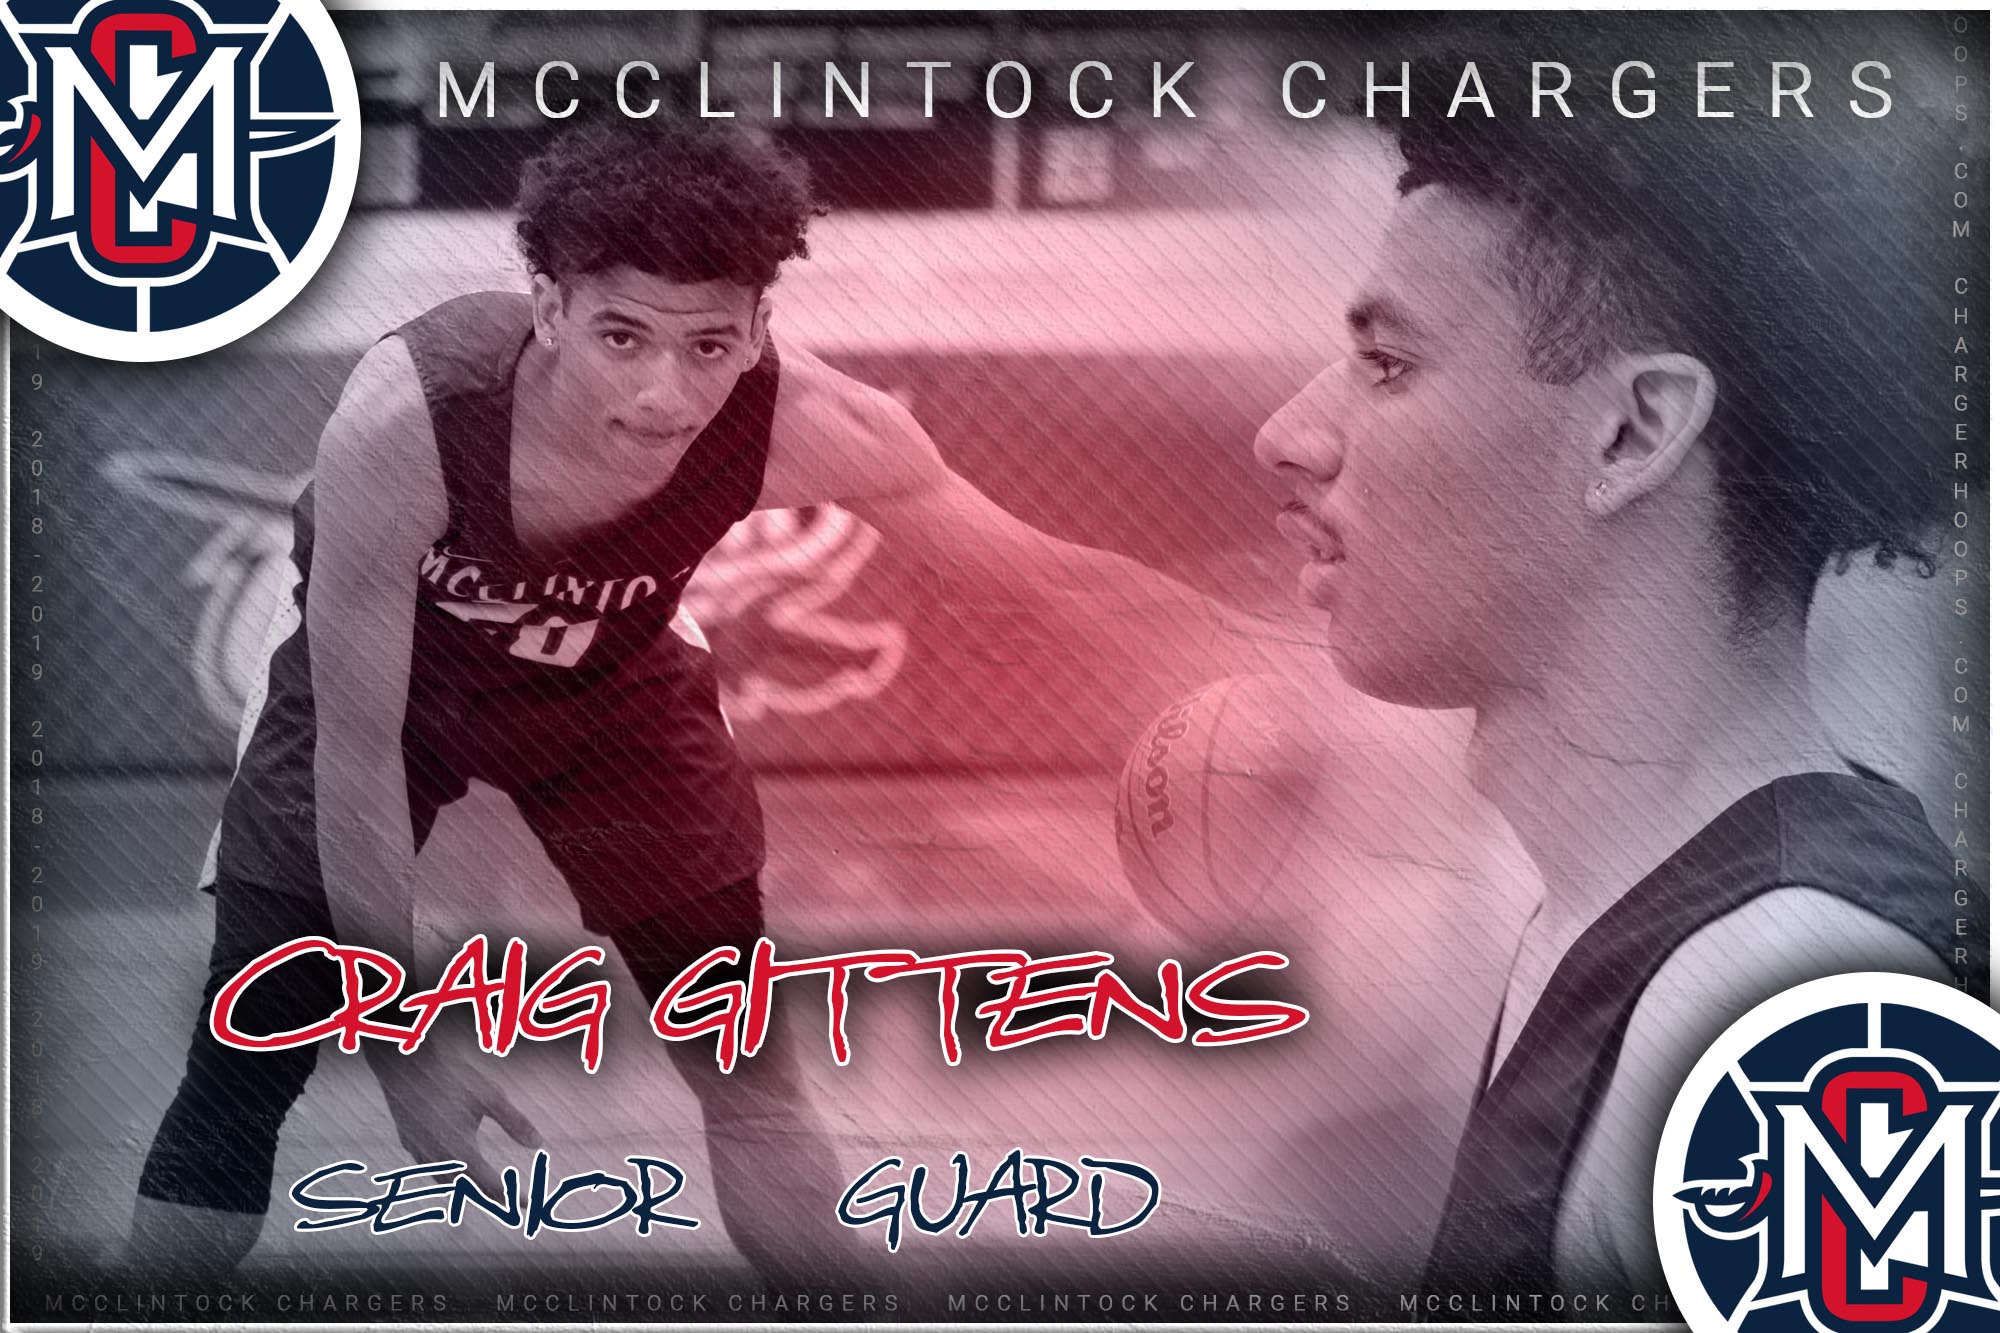 McClintock Chargers Basketball- Craig Gittens